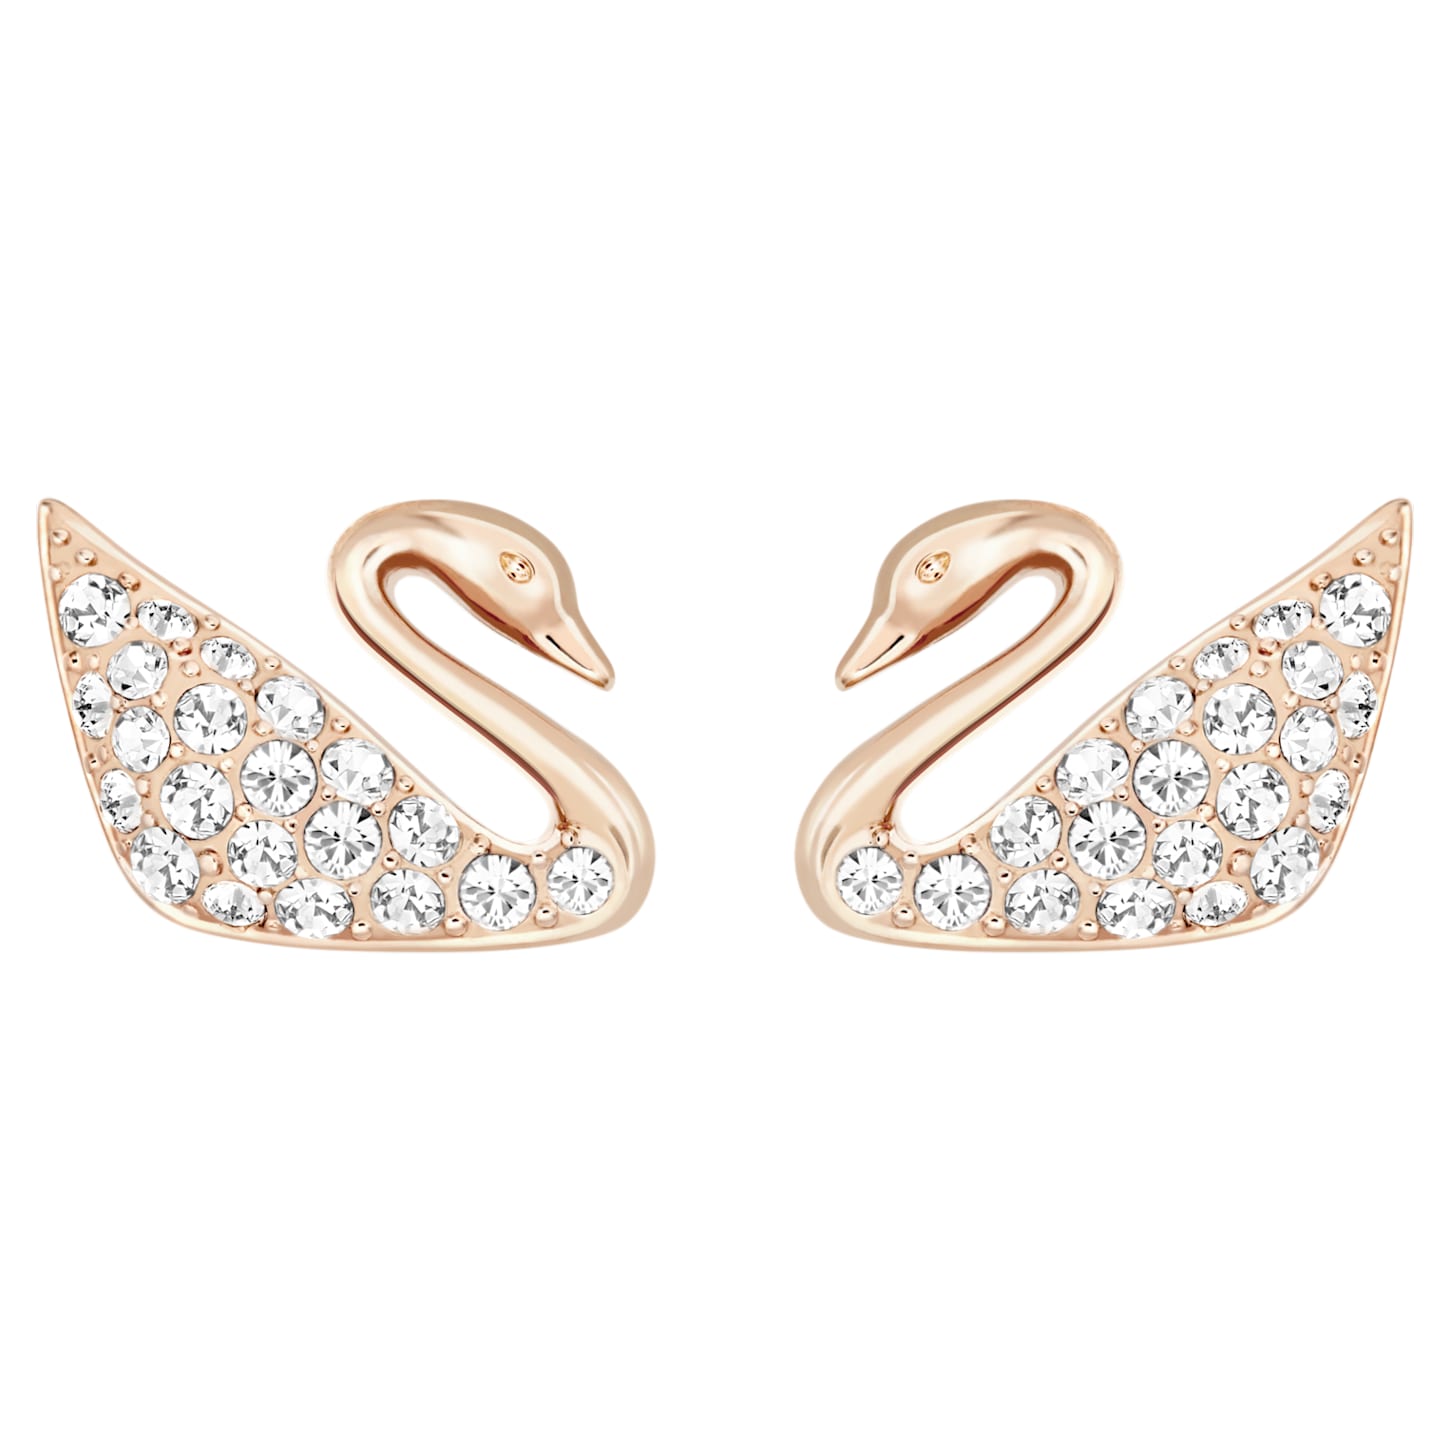 Bông tai thiên nga vàng hồng Swarovski - Swan Pierced Earrings White Rose Gold - 1